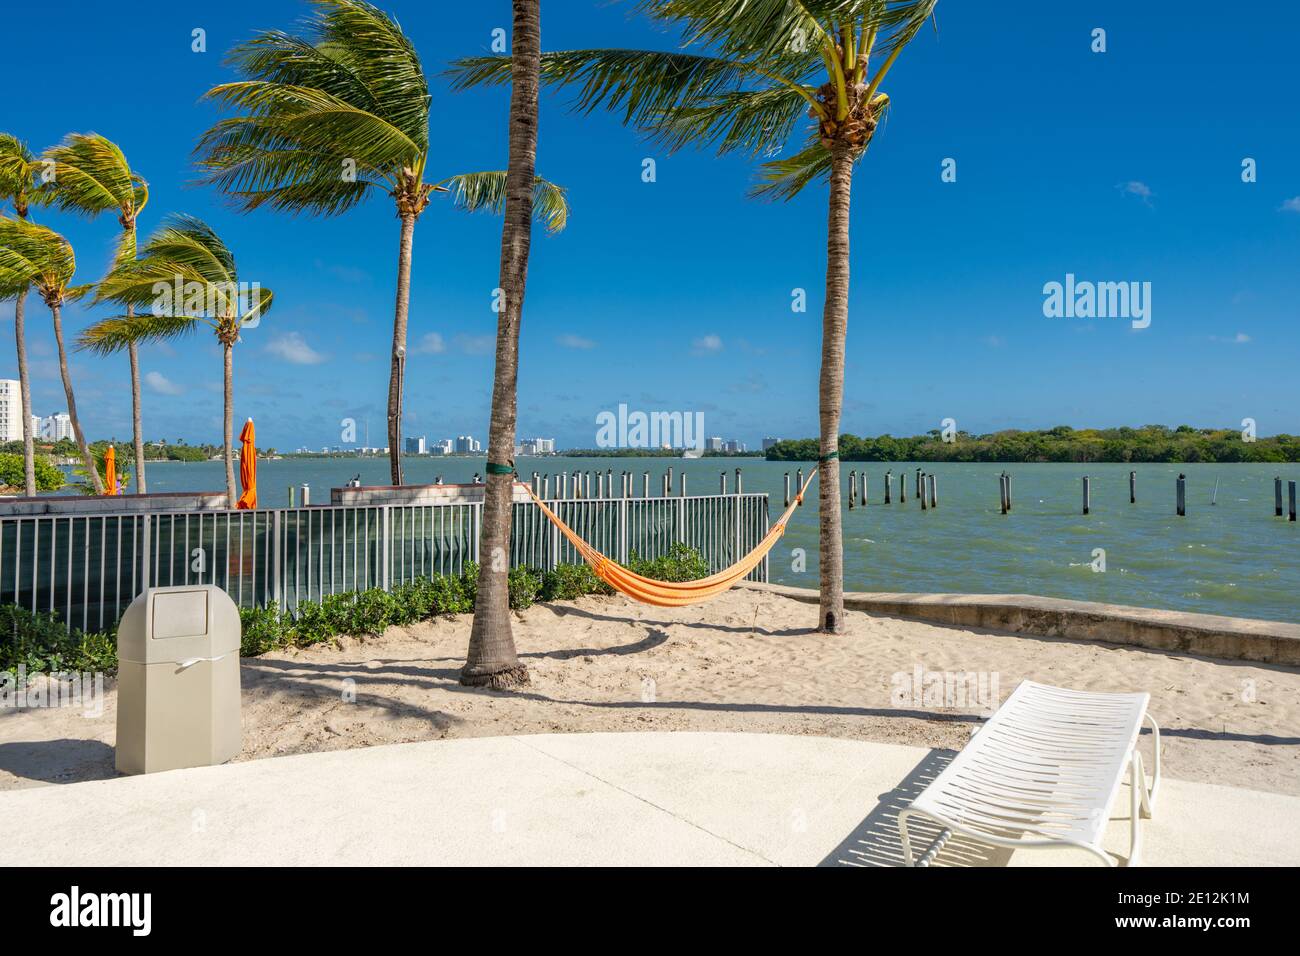 Scène surplombant la baie de Miami Biscayne Banque D'Images